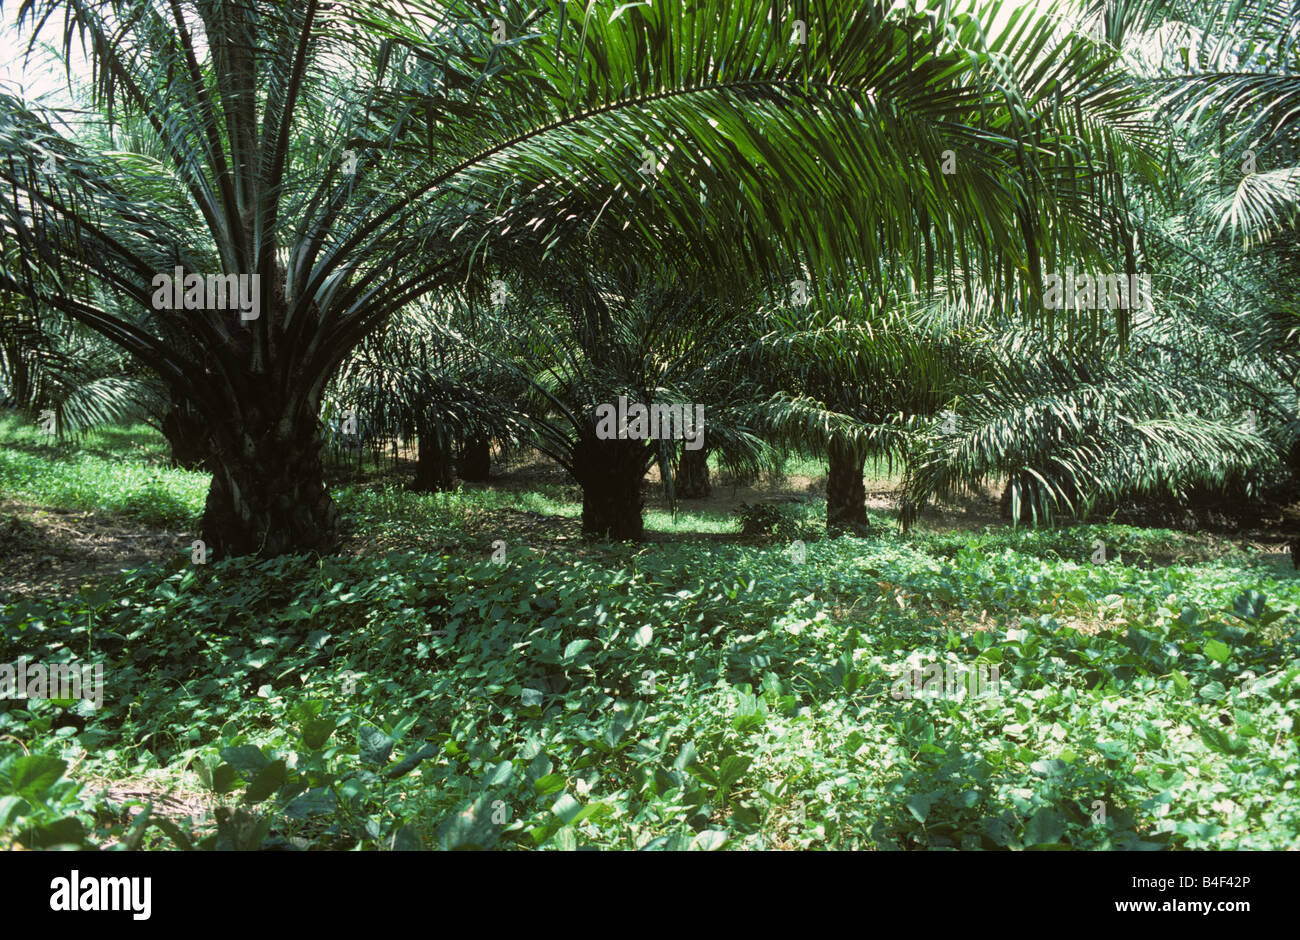 Plantación de palma de aceite productiva madura con la legumbre cubierta de tierra plantas de nitrógeno para el control de malezas Foto de stock